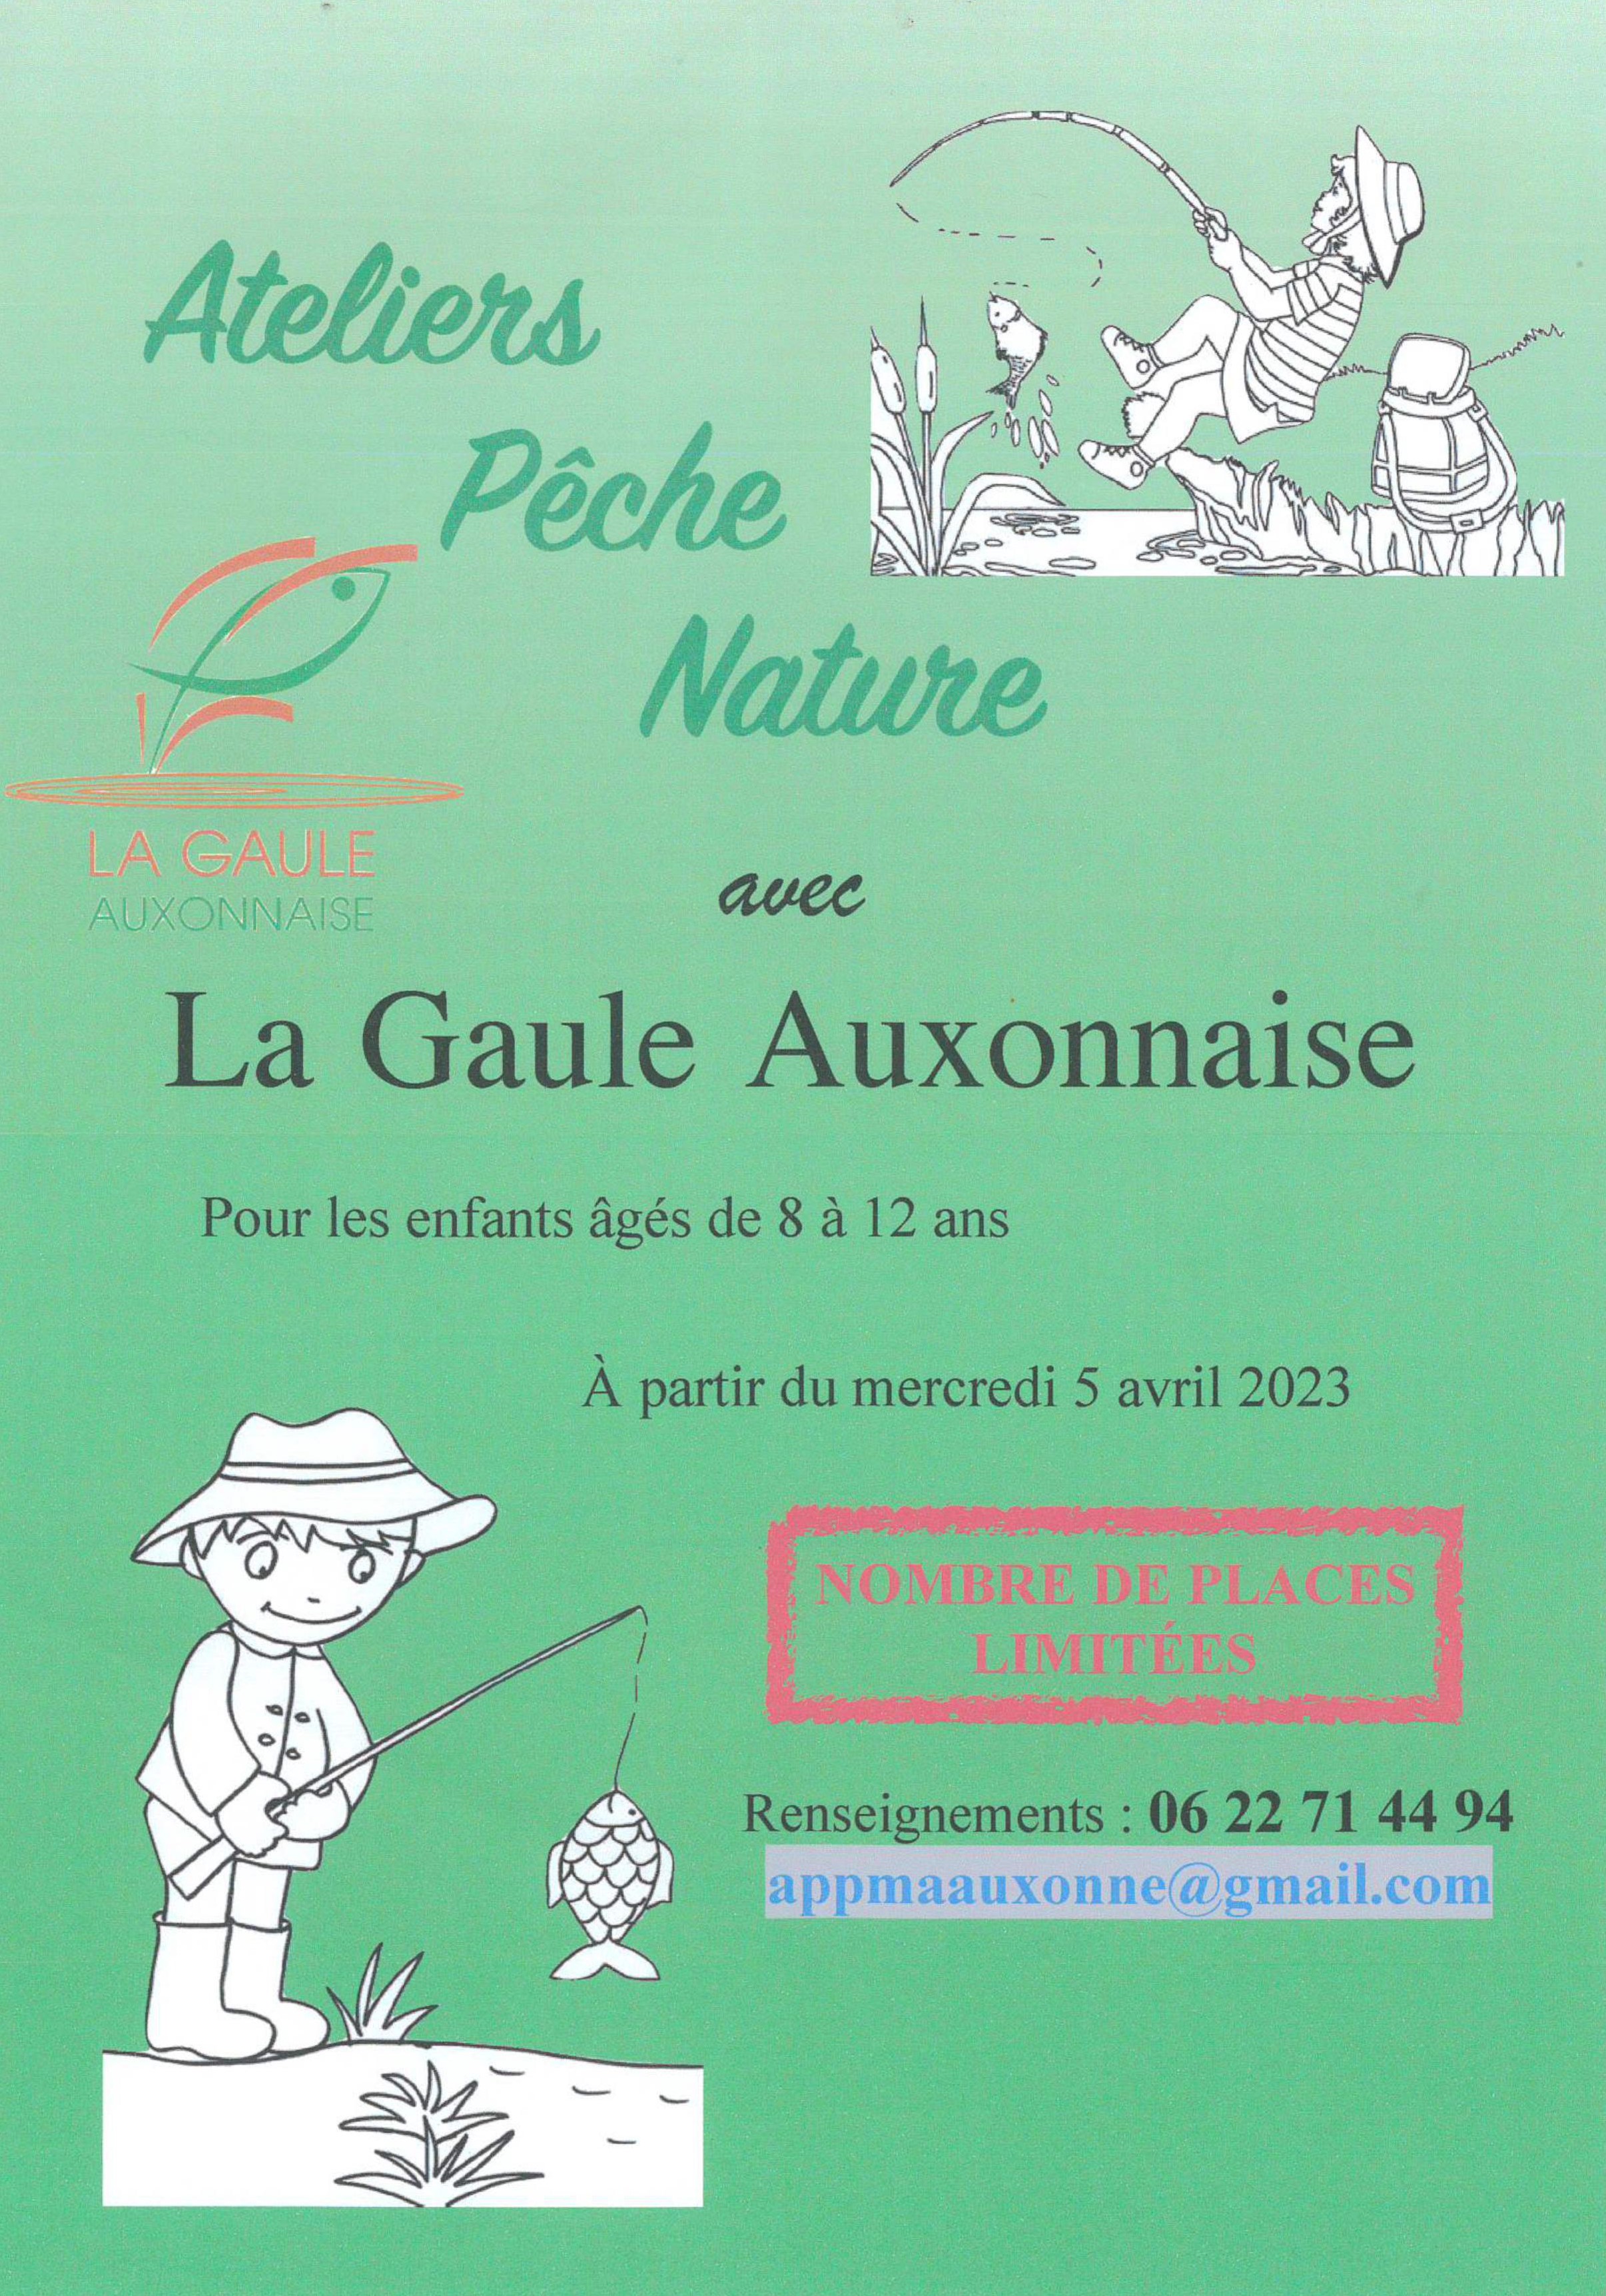 Ateliers pêche nature - Crédits : La Gaule Auxonnaise